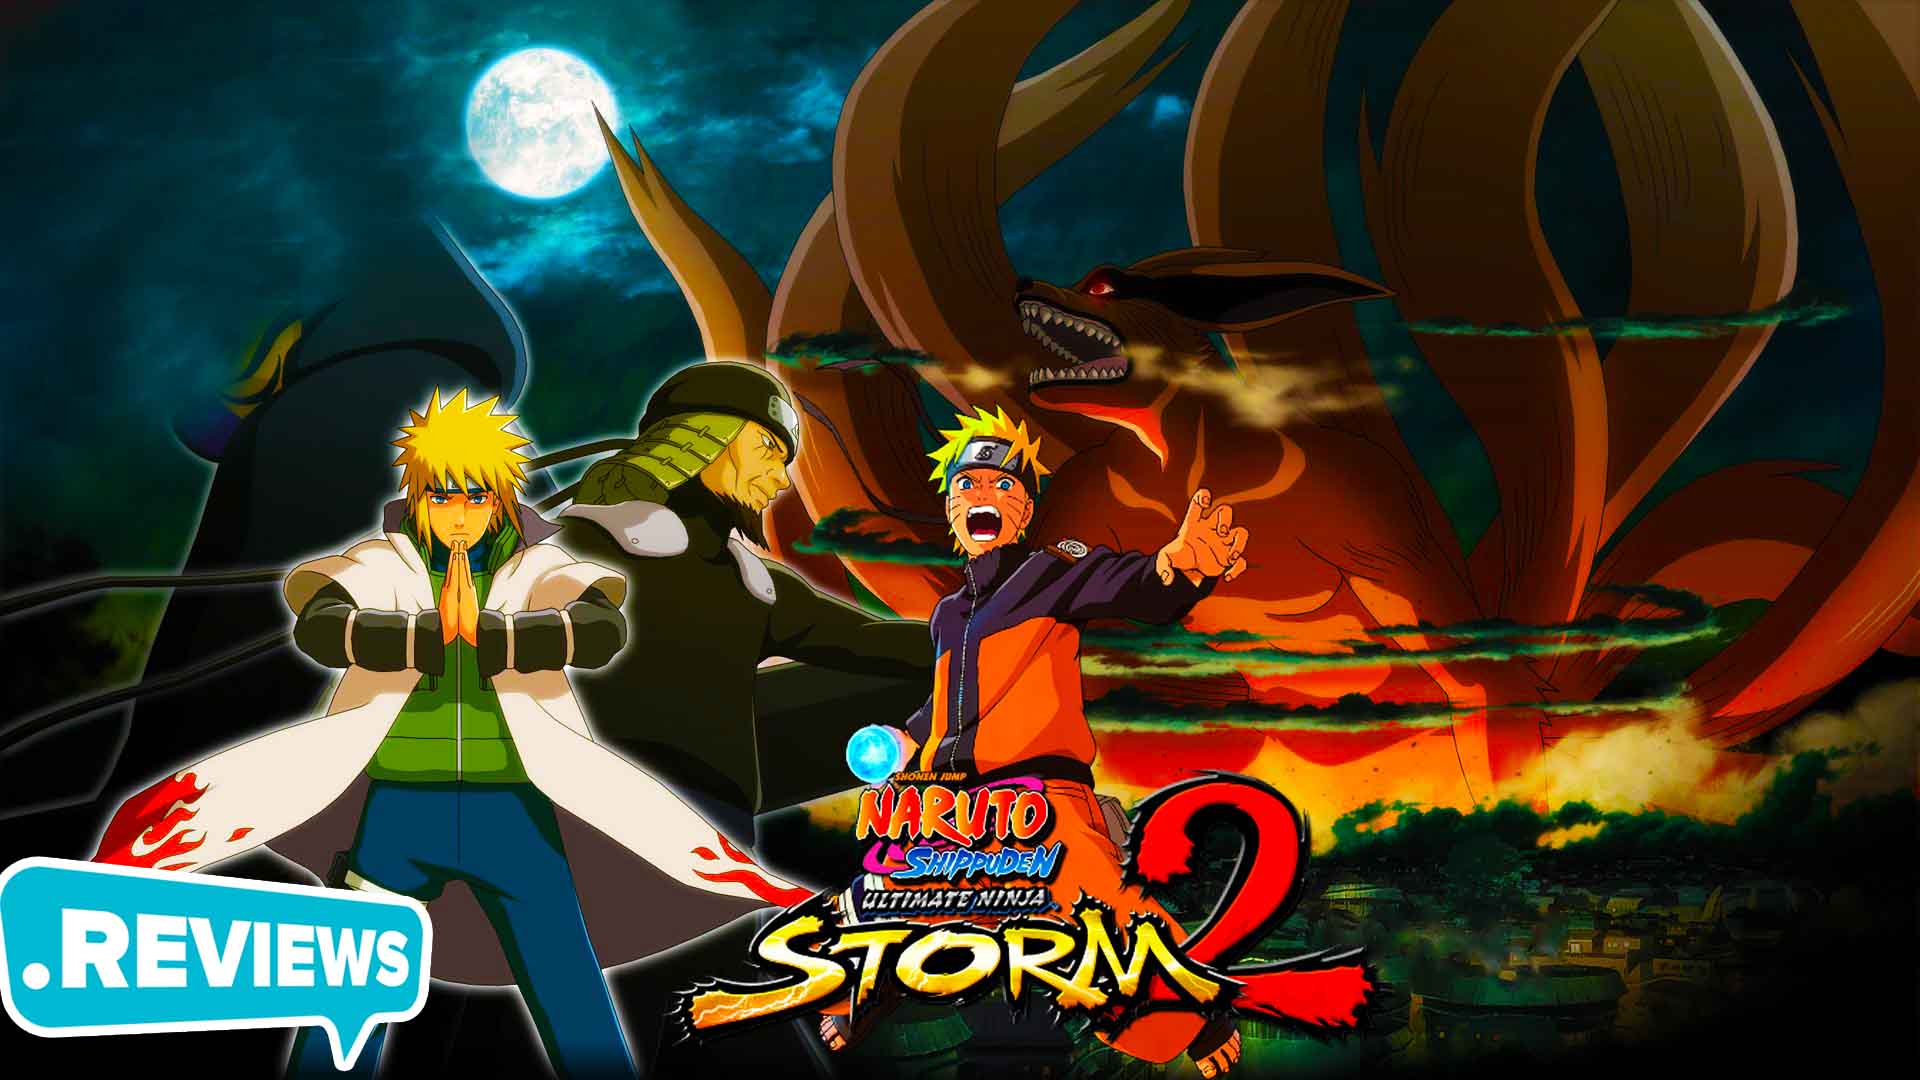 Bạn có muốn tham gia vào thị trường game Naruto để trải nghiệm cảm giác cuồng nhiệt và kịch tính? Trước khi thử sức với Naruto Storm 2, hãy xem hướng dẫn tải trò chơi của chúng tôi để biết thêm thông tin về cách tải và chơi.